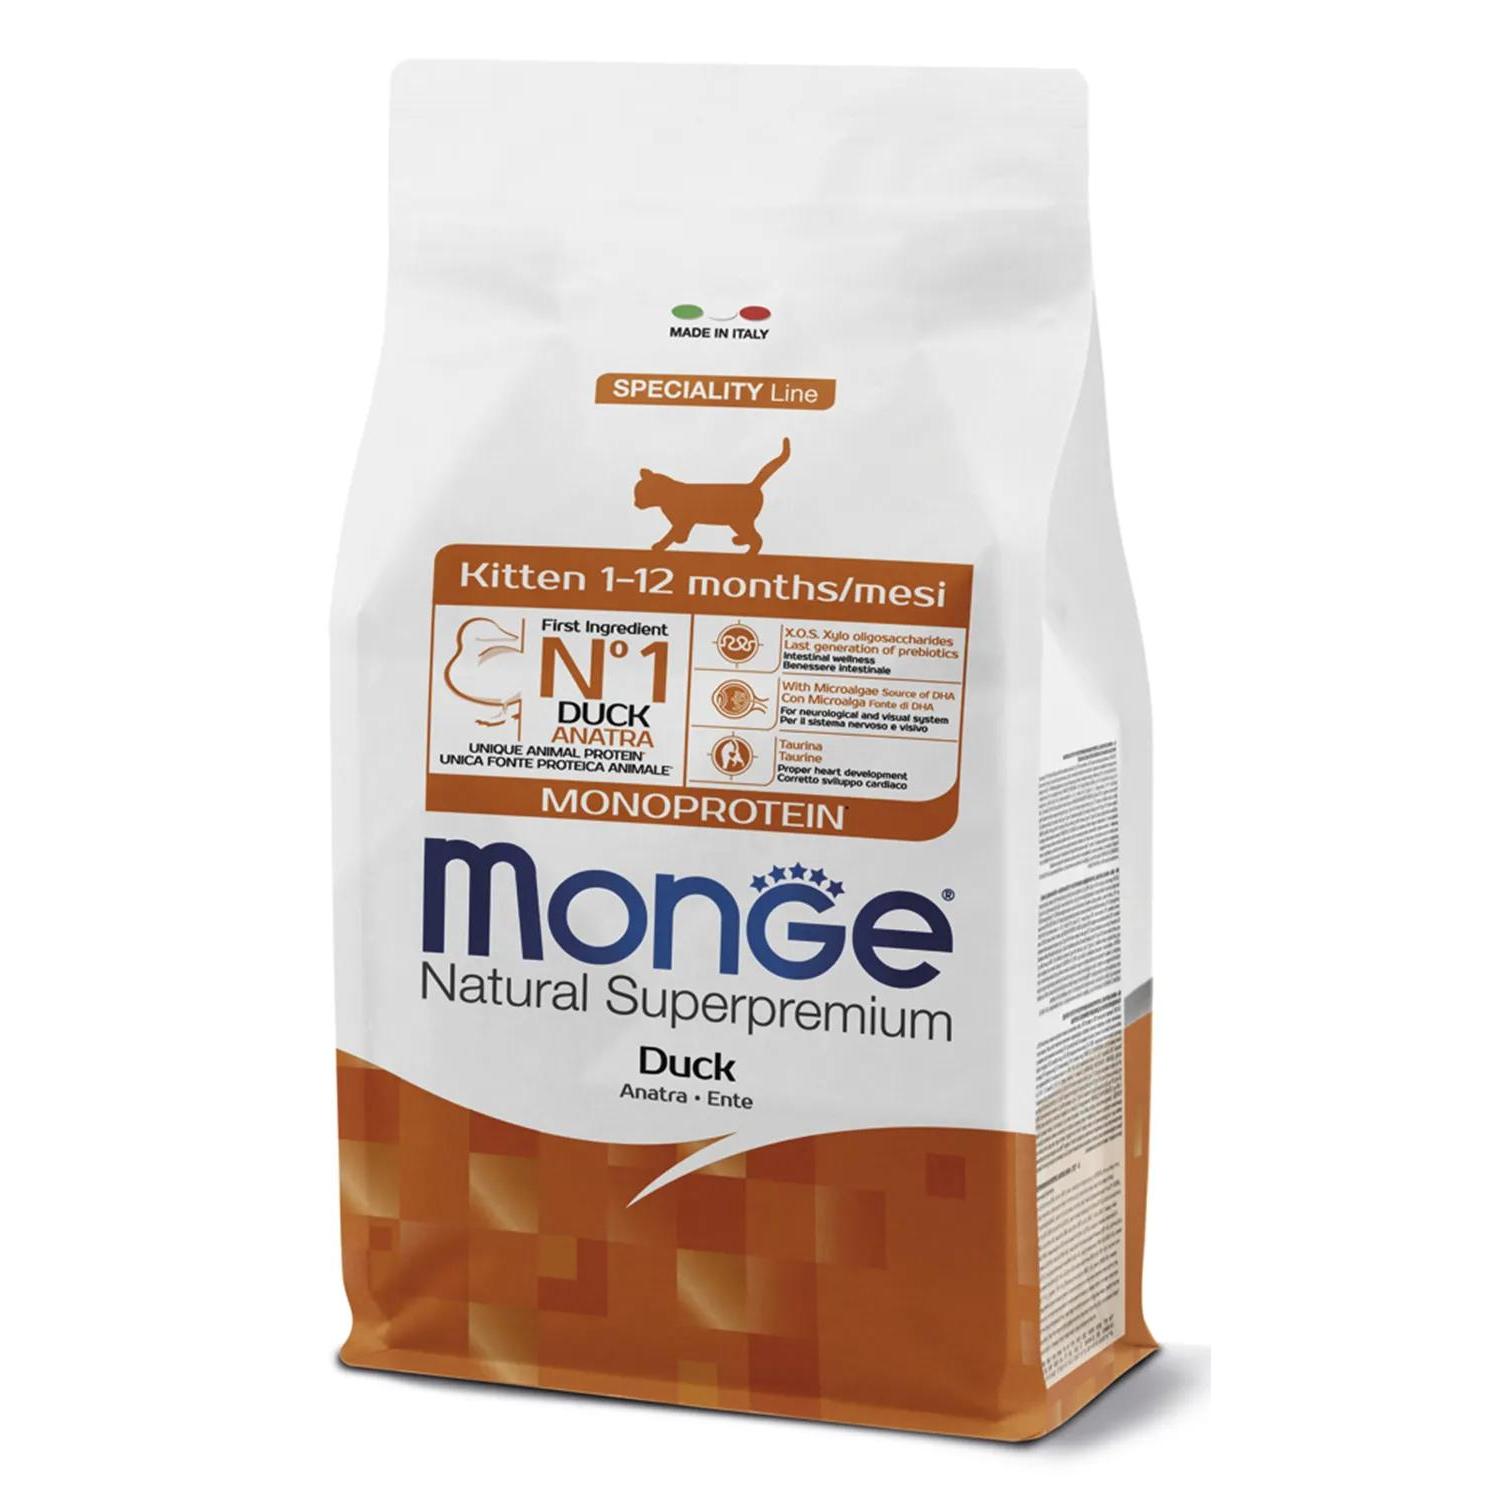 Monge сух. Speciality line Monoprotein Kitten утка